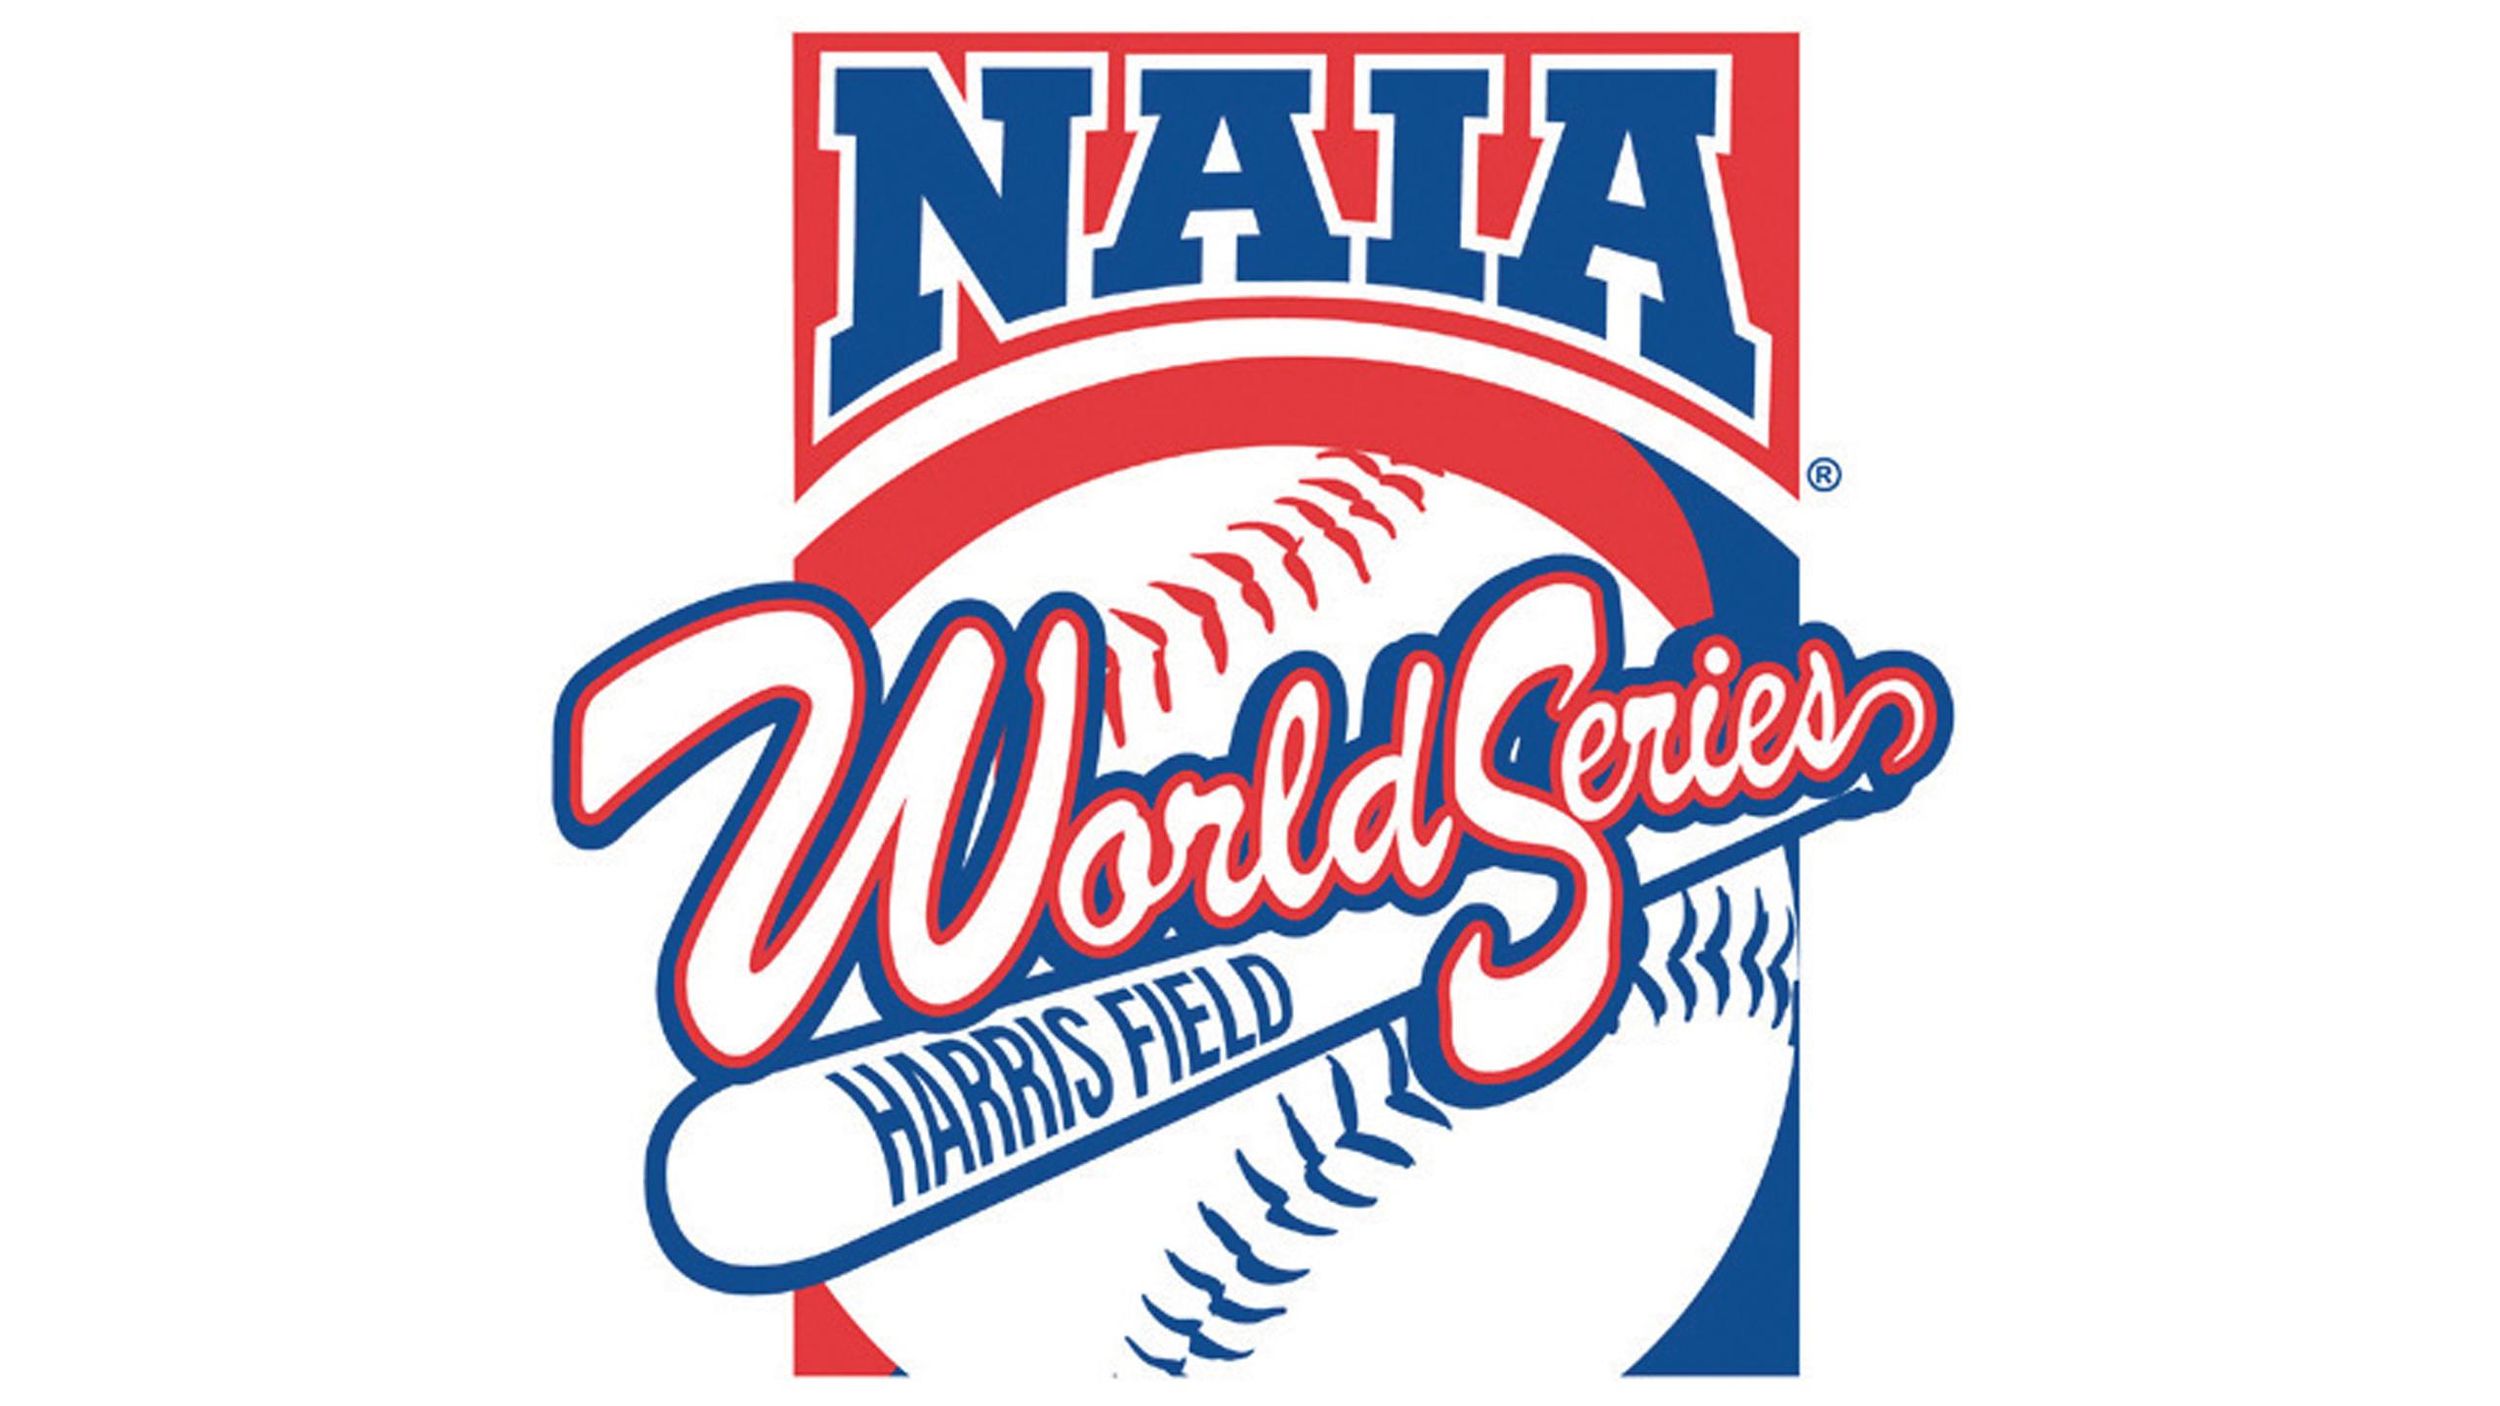 NAIA Baseball World Series to remain in Lewiston through 2024 | The